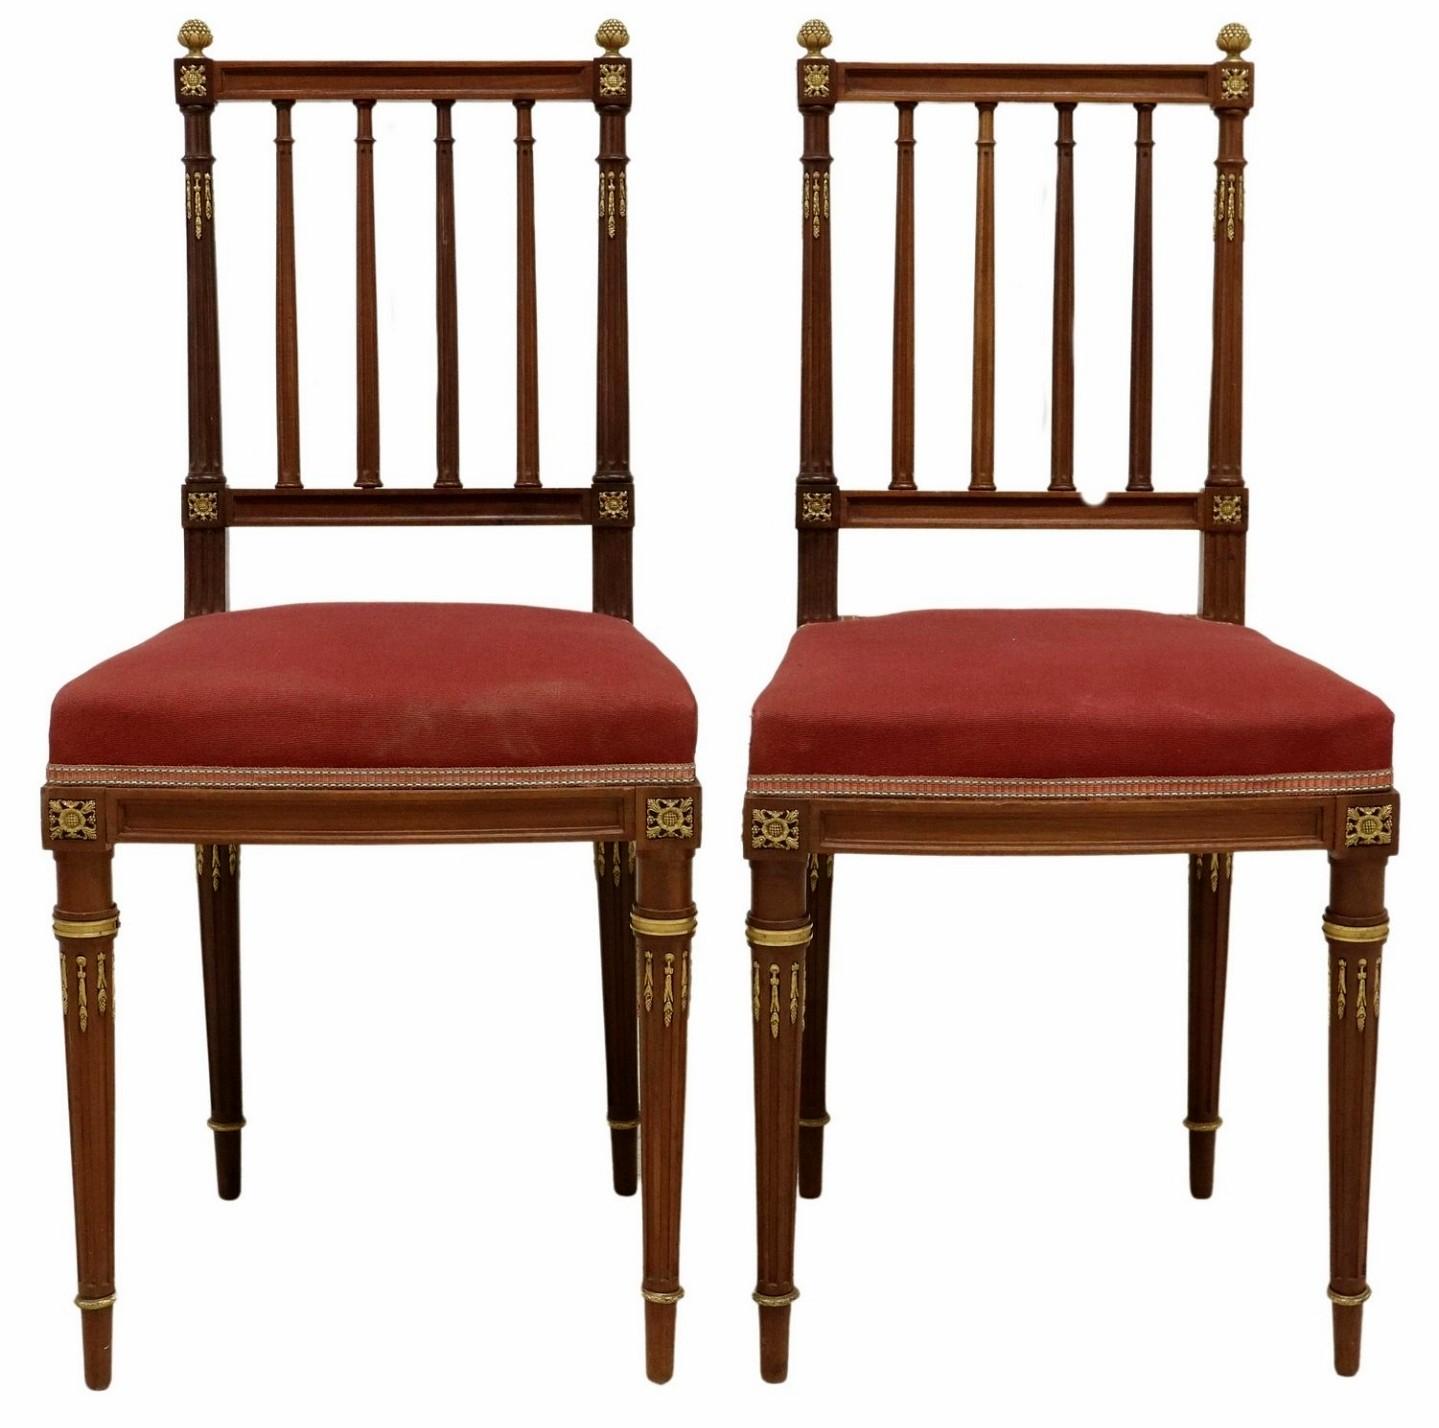 Paire de chaises d'appoint en acajou de style Louis XVI, montées sur bronze doré, attribuées au luxueux fabricant de meubles parisien Maison Krieger (1826-1910).

Fabriqué à la main à Paris, France, à la fin du 19ème siècle, exceptionnellement